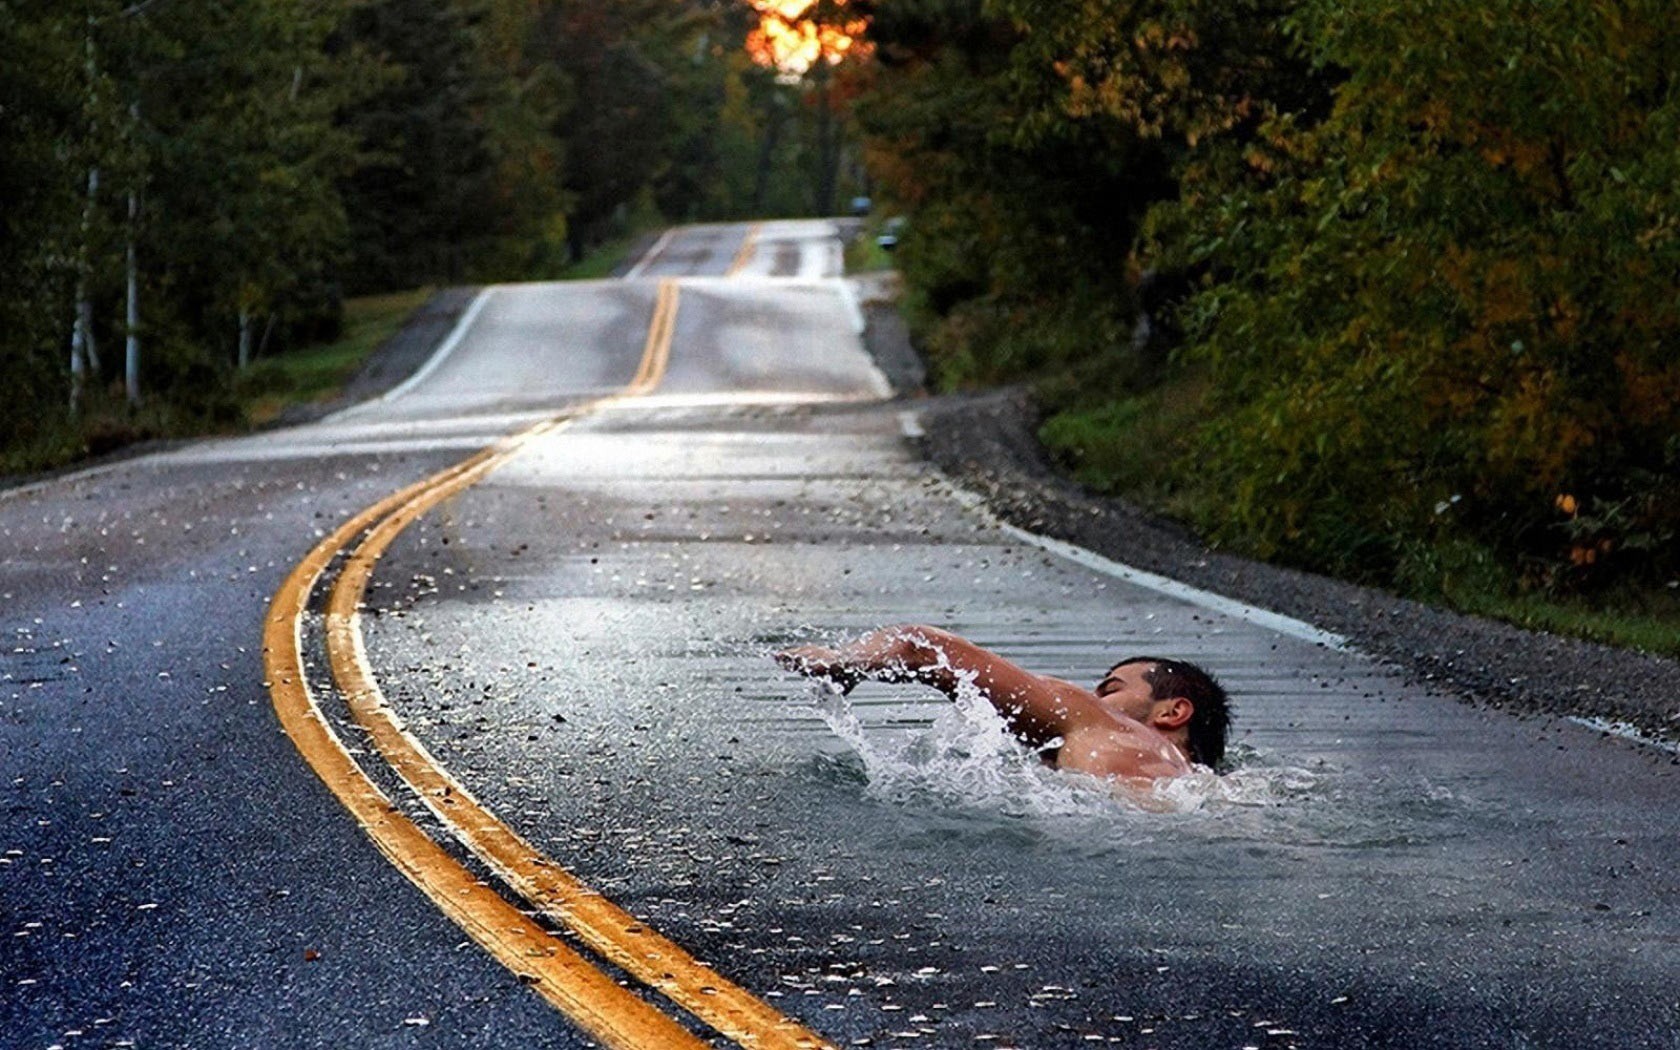 General 1680x1050 swimming photo manipulation road water asphalt humor men